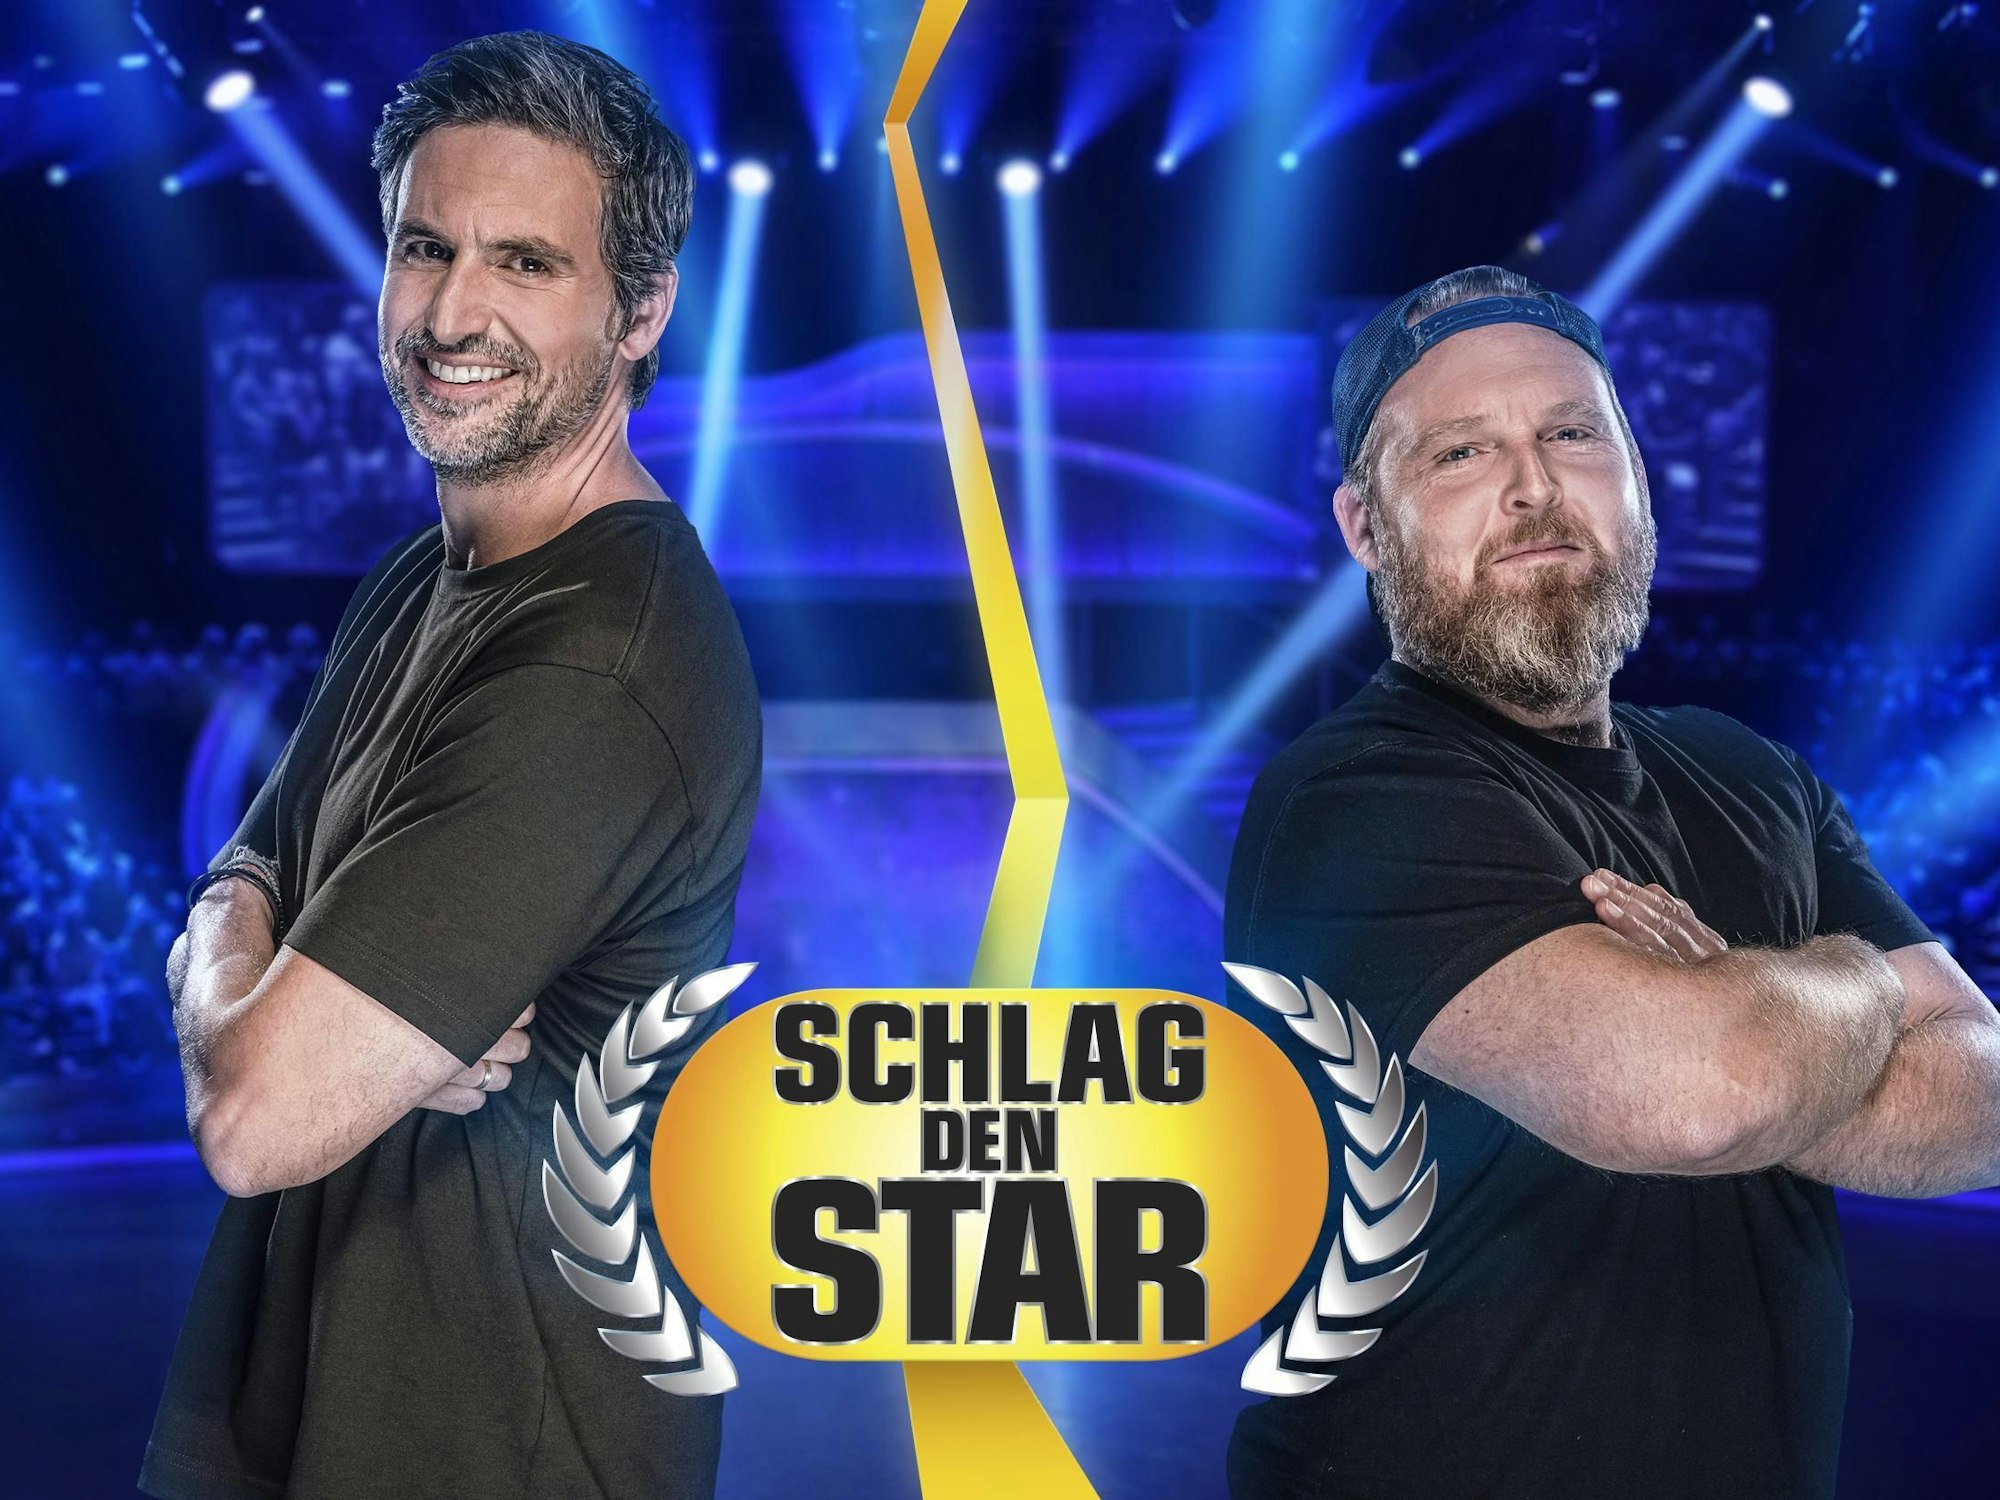 Das Foto stammt aus der ProSieben-Show Schlag den Star und zeigt die Schauspieler Tom Beck (l.) und Axel Stein (r.) mit verschränkten Armen.